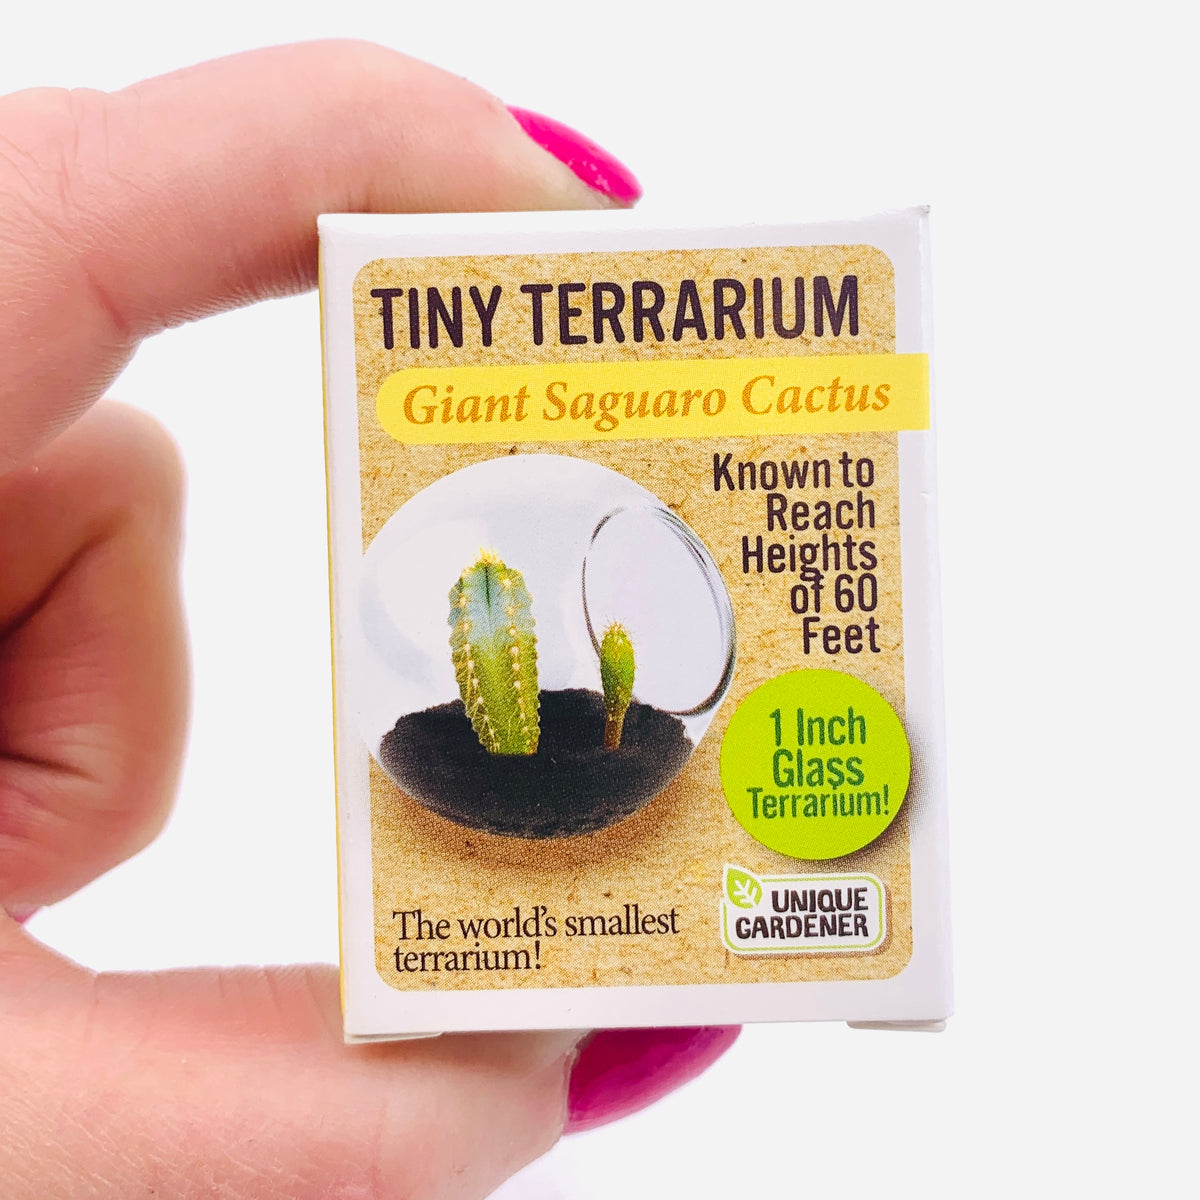 Tiny Terrarium, Giant Saguaro Cactus